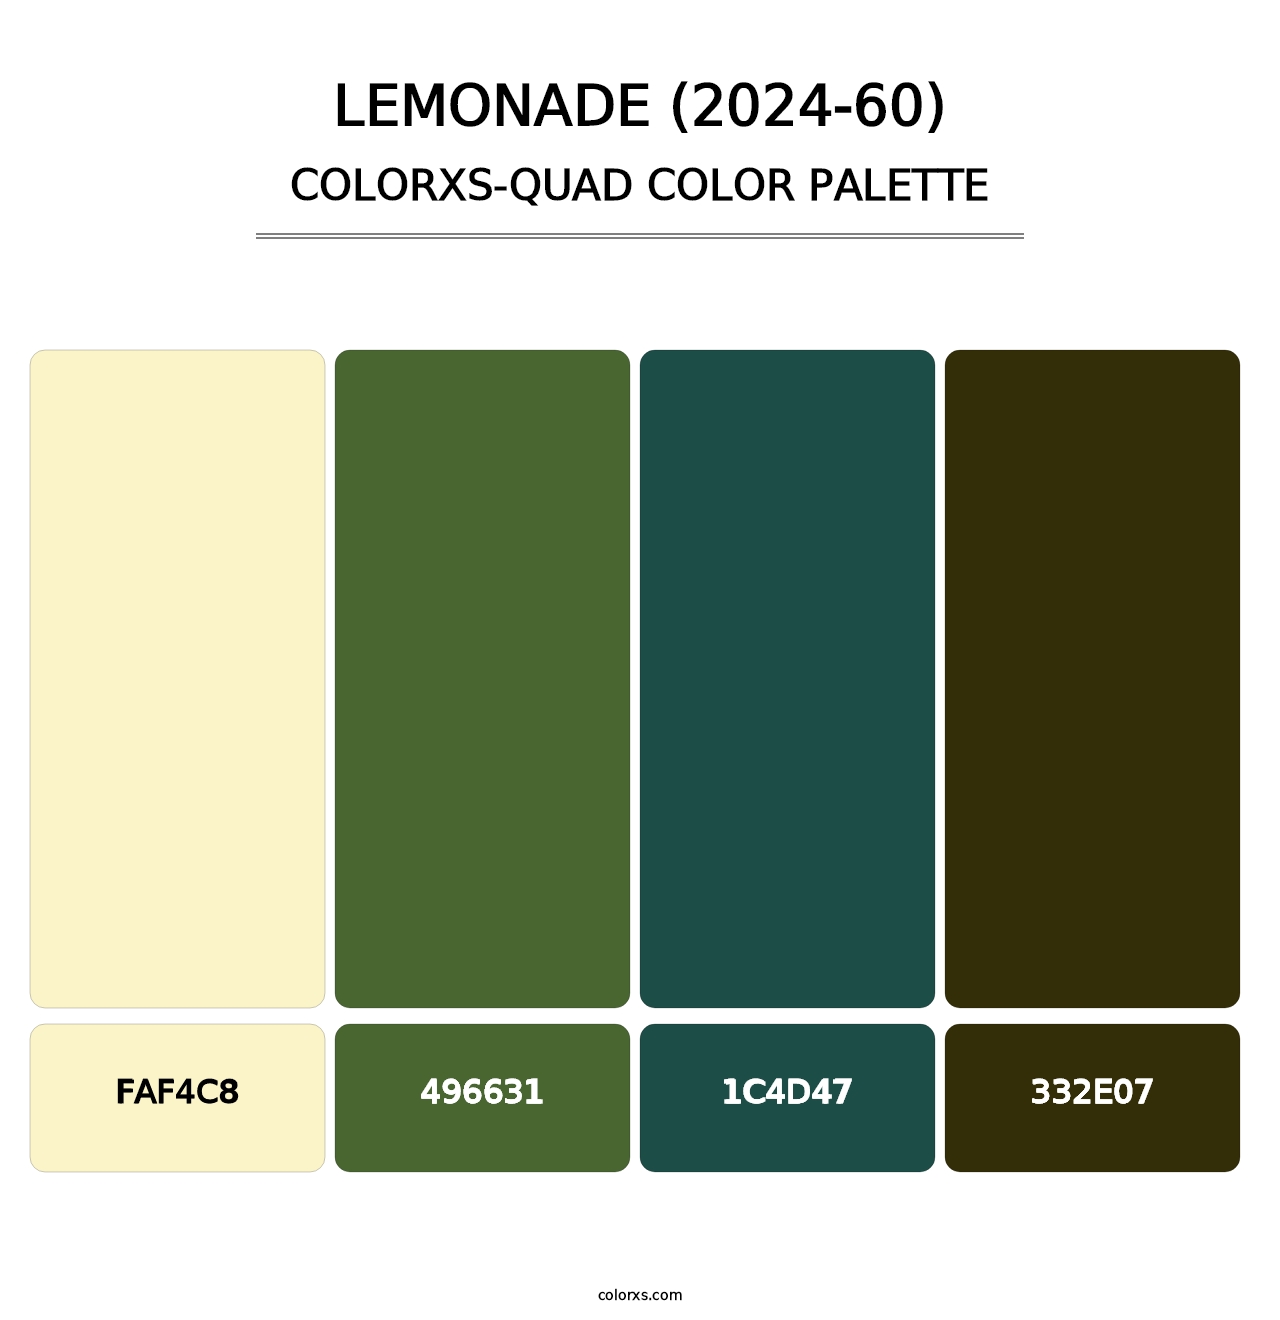 Lemonade (2024-60) - Colorxs Quad Palette